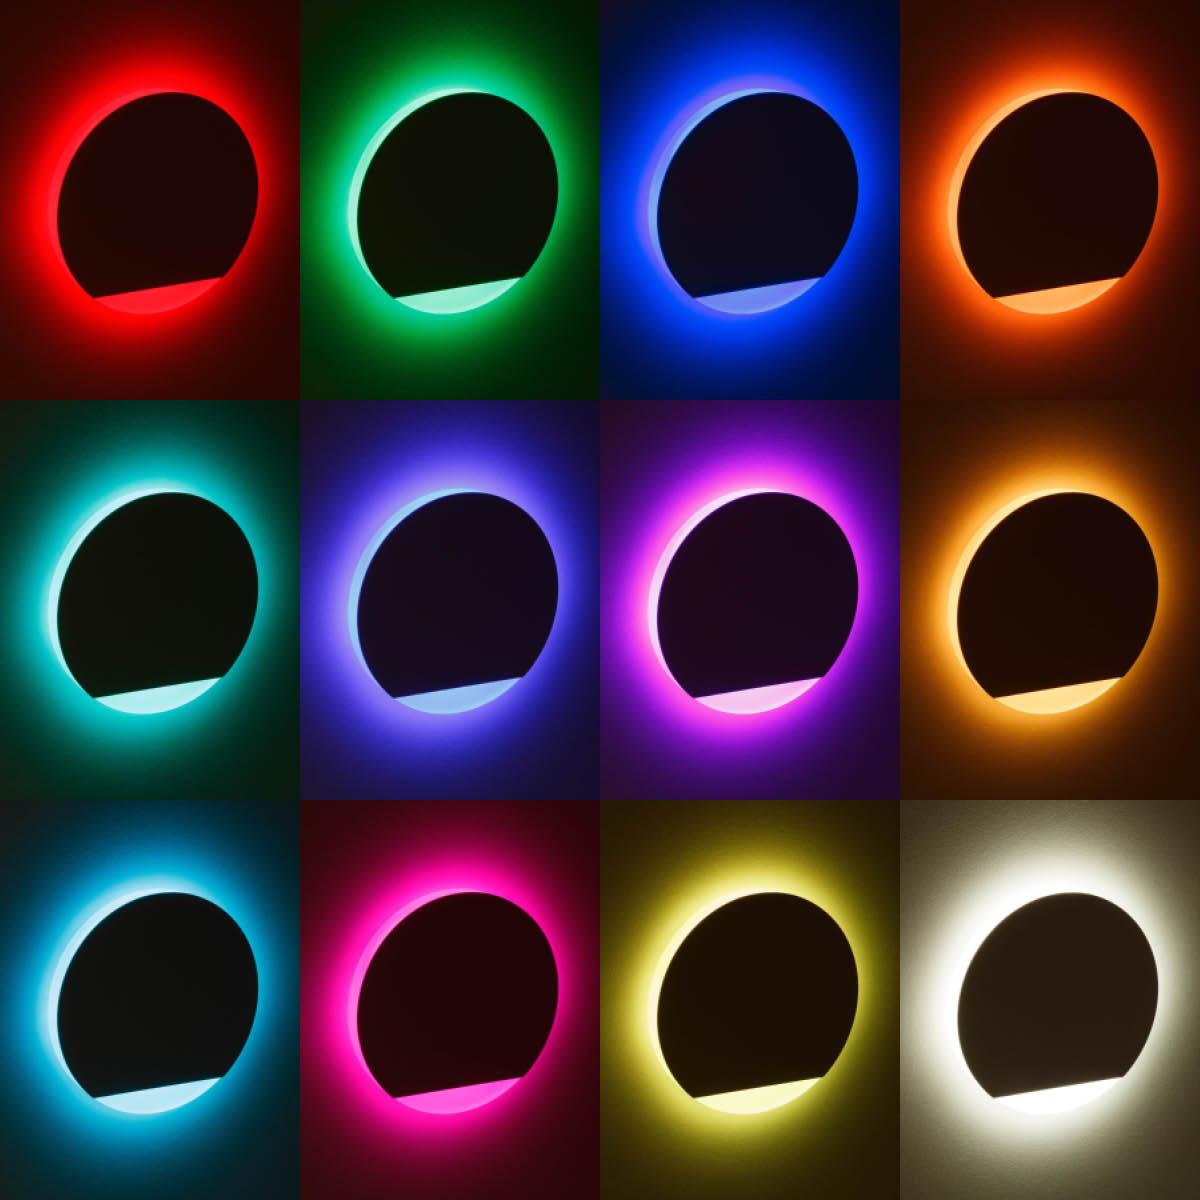 LED Treppenleuchte IP44 rund weiß - Lichtfarbe: RGB Warmweiß 3W - Lichtaustritt: Orbis